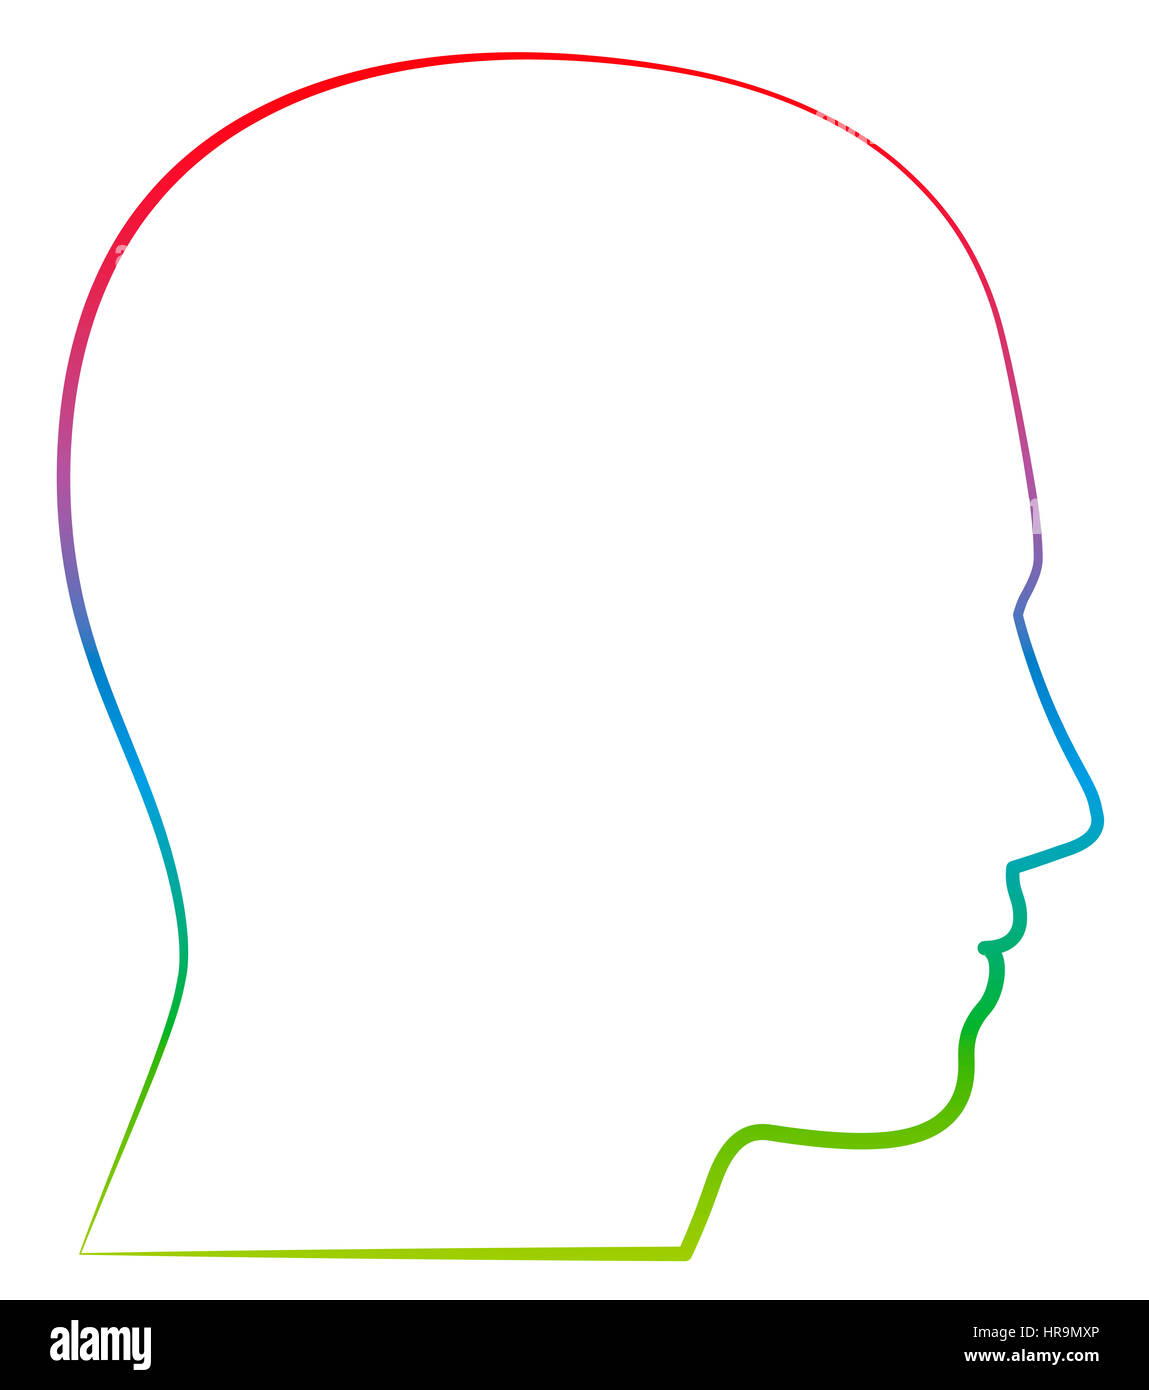 Kopf, Höhenplan - farbige Gliederung Abbildung auf weißem Hintergrund. Stockfoto